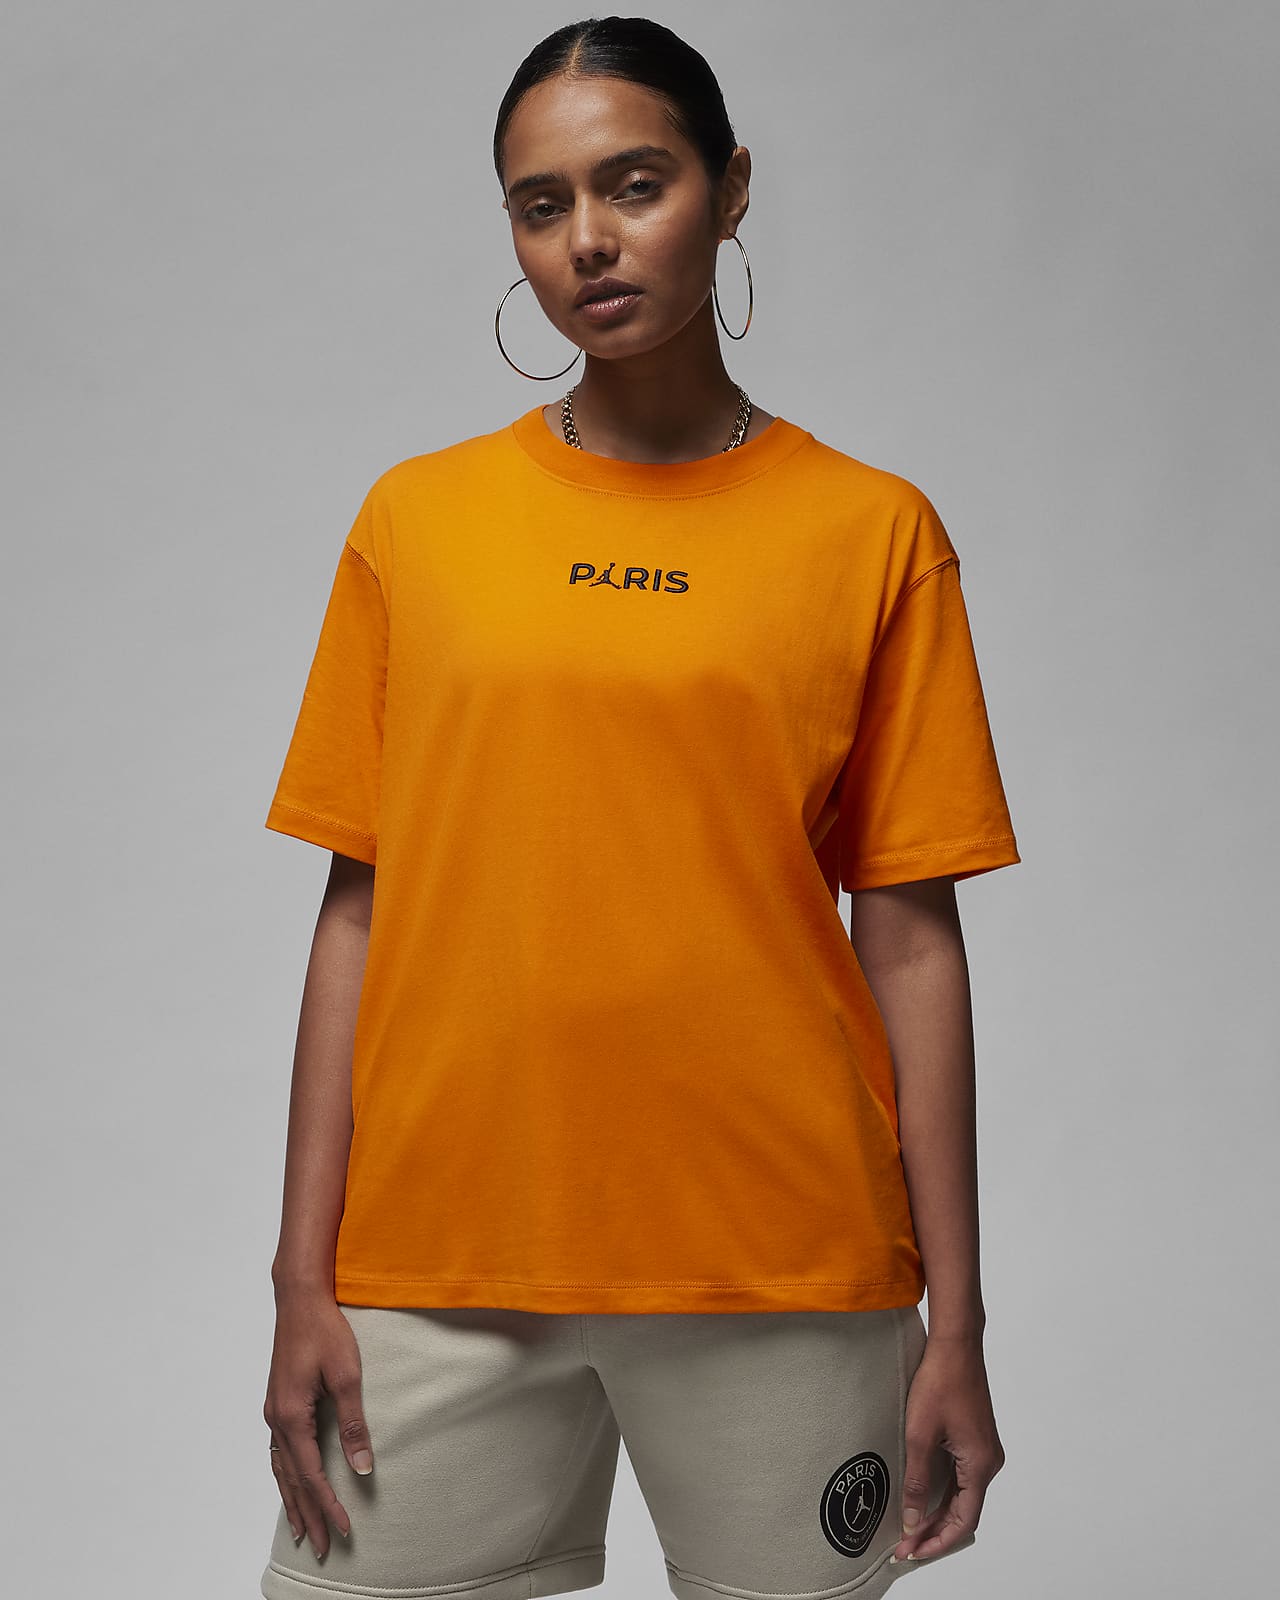 París Saint-Germain Camiseta - Mujer